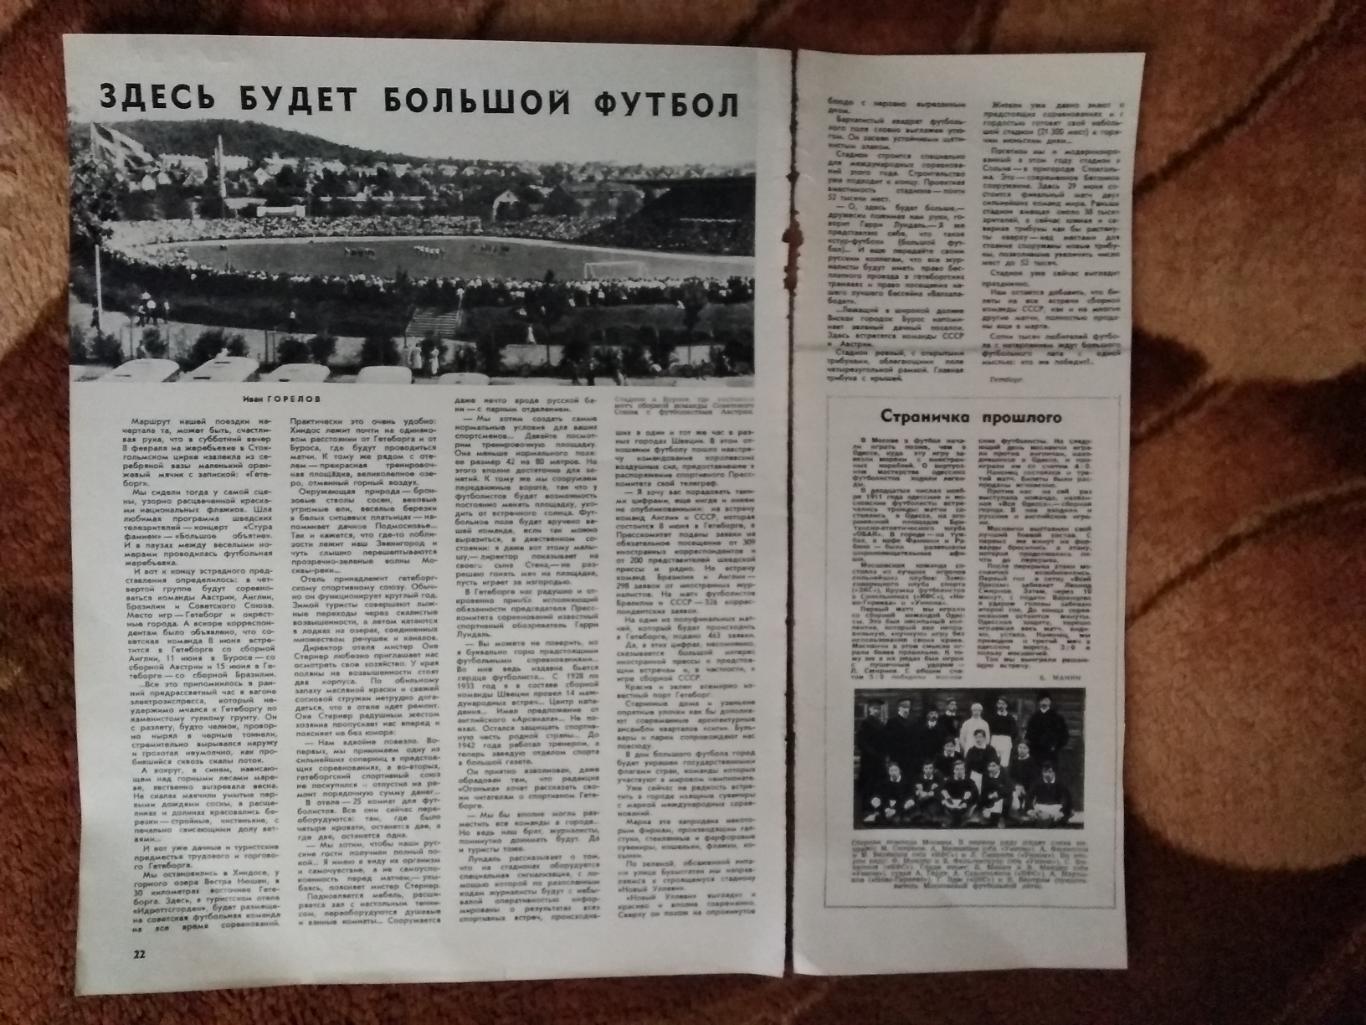 Статья.Футбол.Чемпионат мира 1958.Швеция.Сборная Москвы 1911.Журнал Огонек 1958.